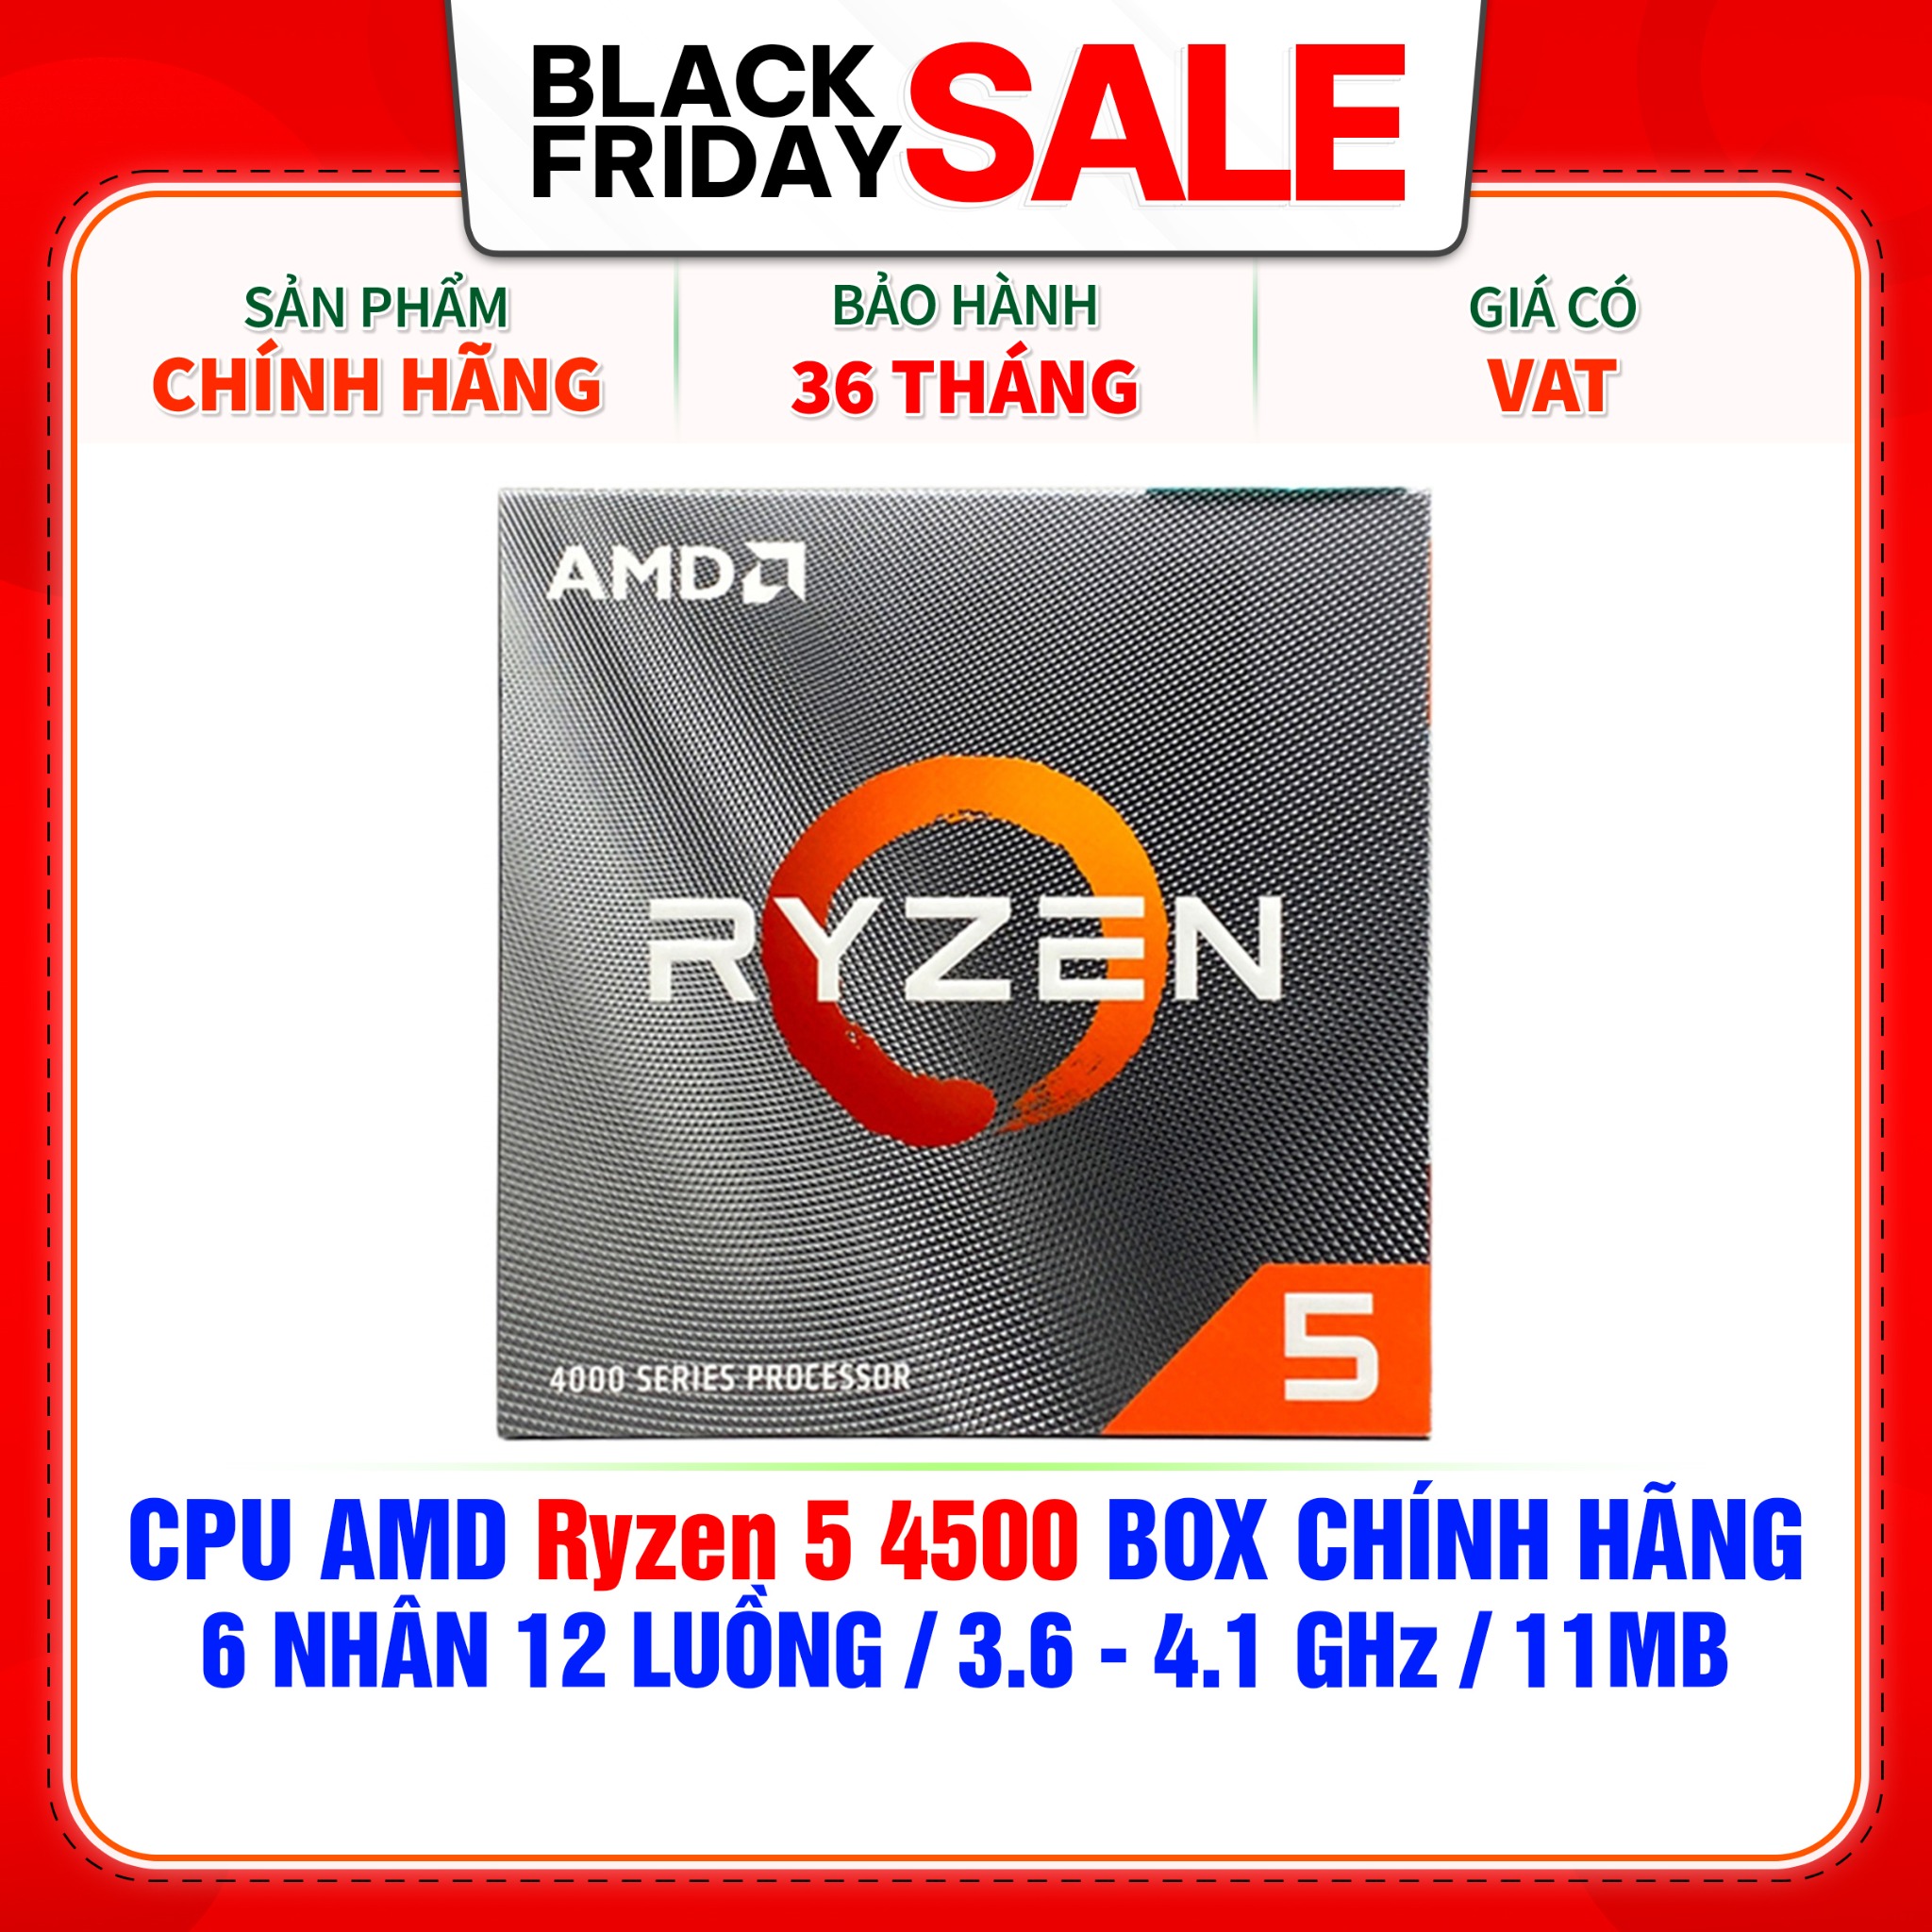 CPU AMD RYZEN 5 4500- AM4 - Chính hãng mới 100% bảo hành 36 tháng